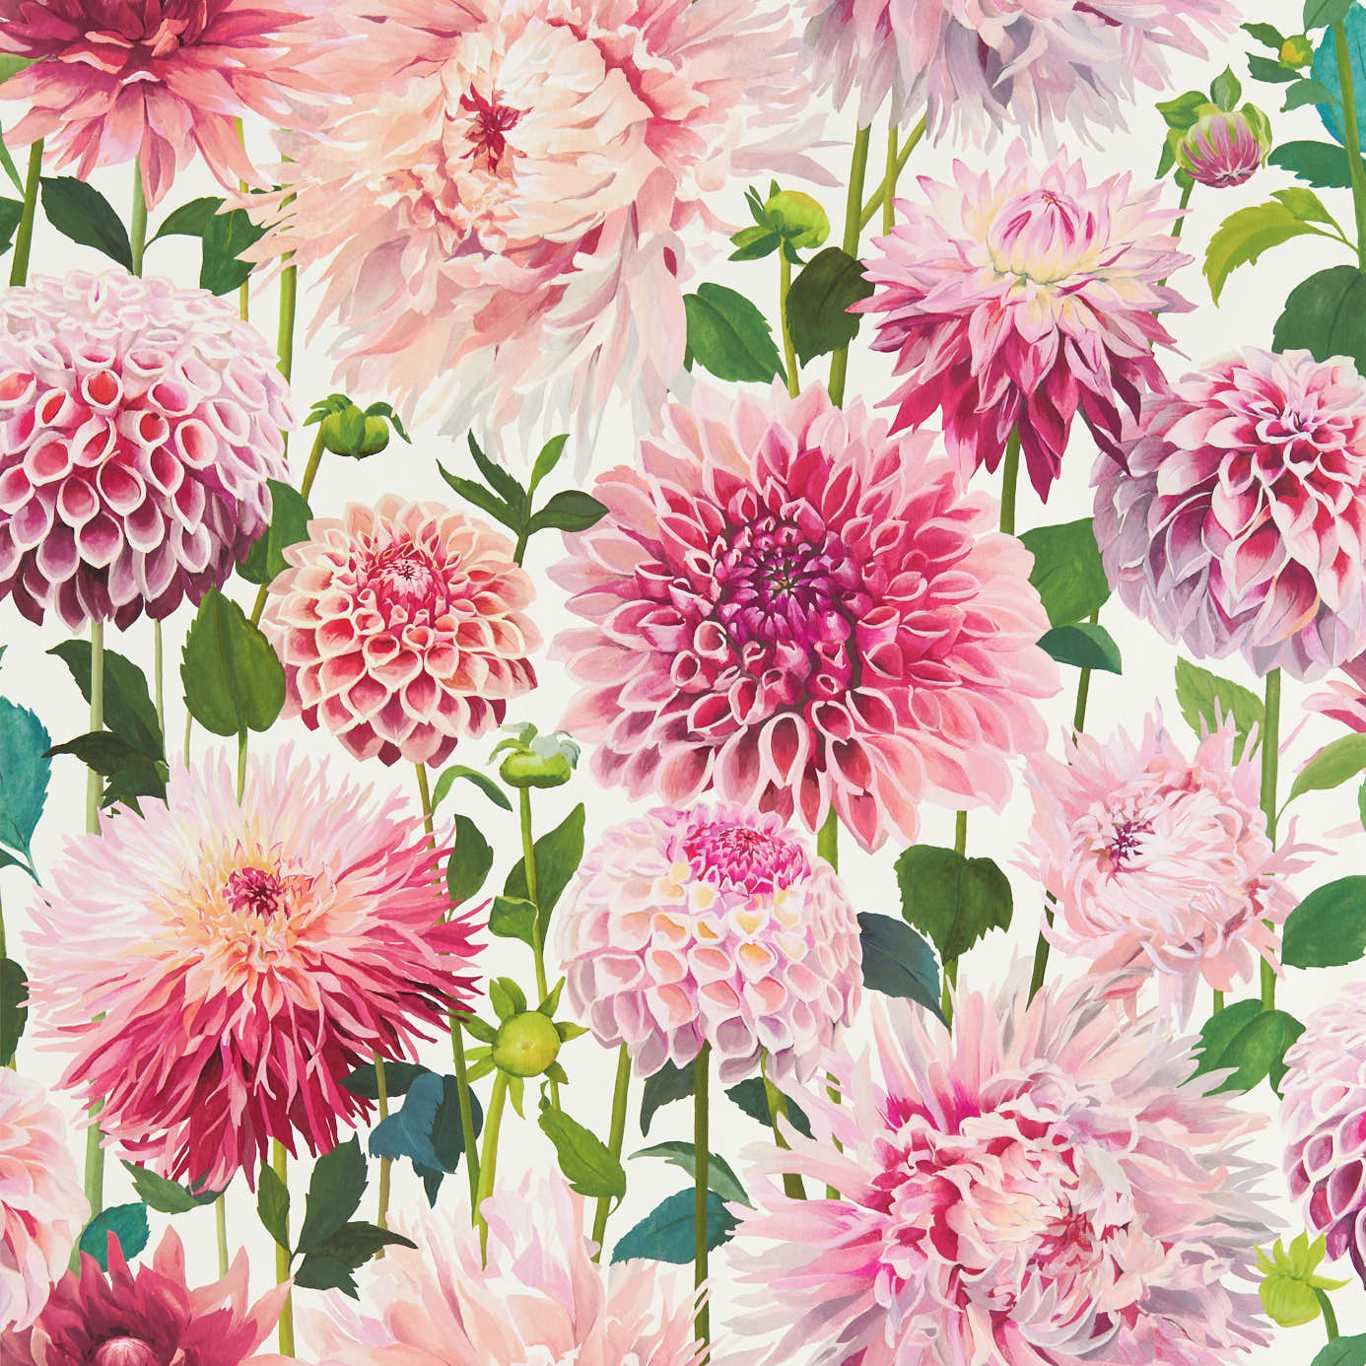 Dahlia Blossom/Emerald/New Beginnings Wallpaper HQN2112843 by Harlequin